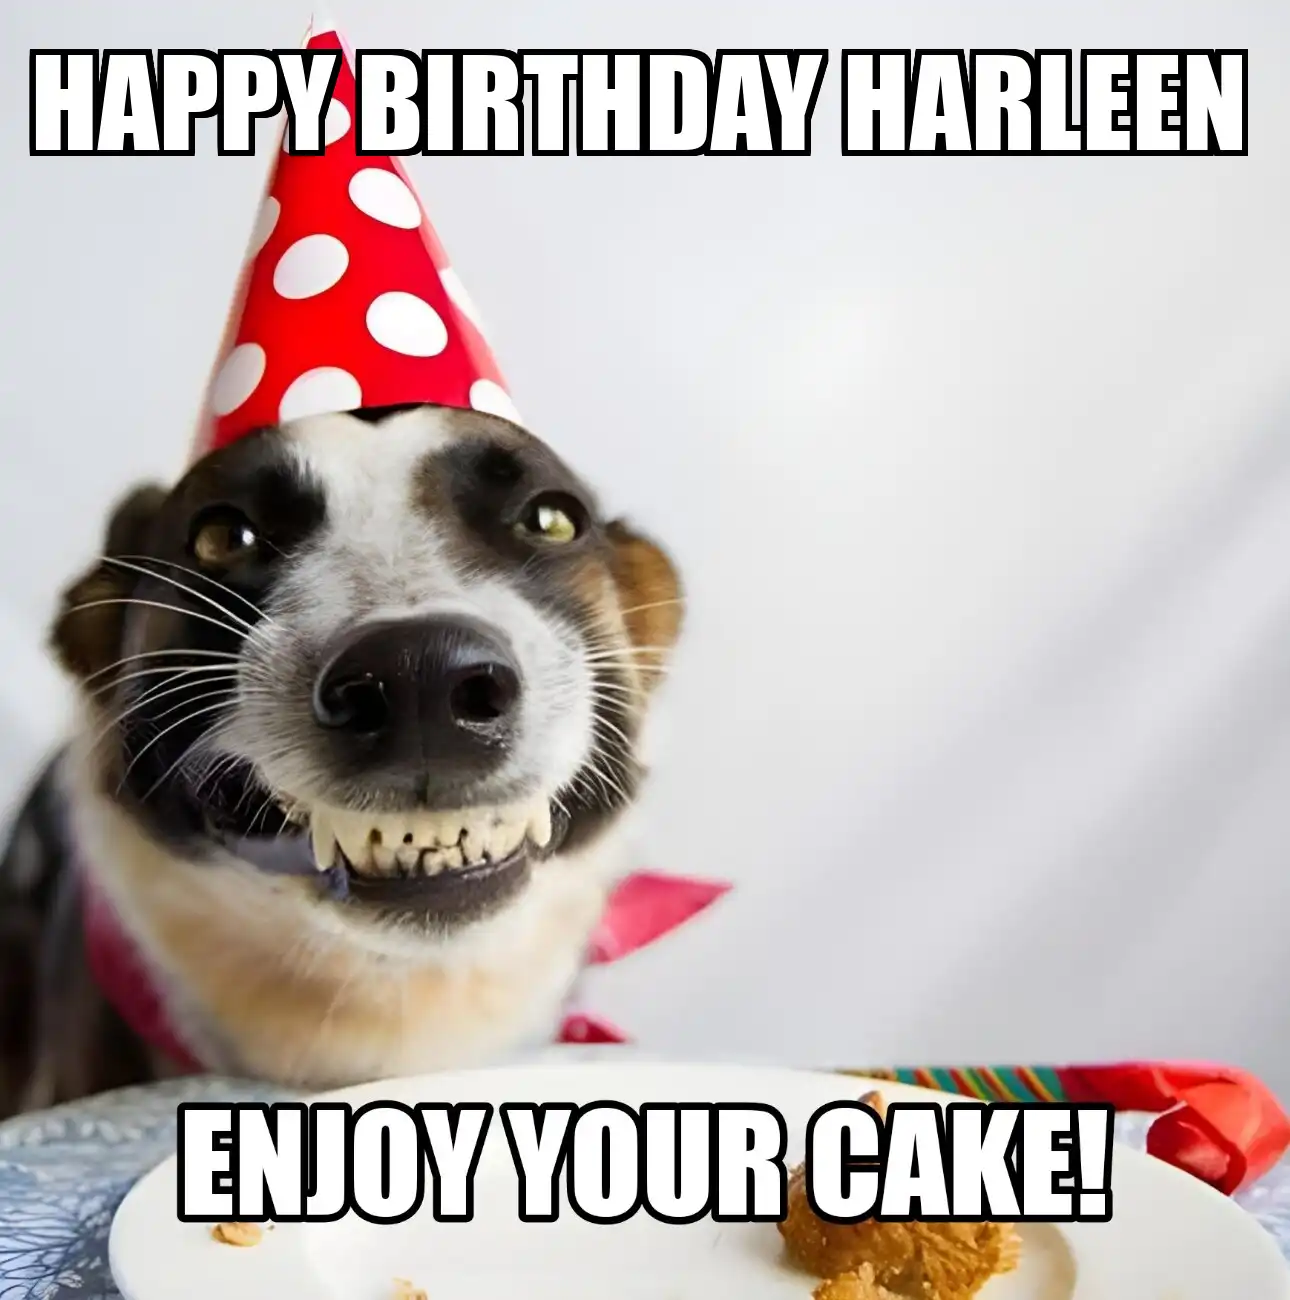 Happy Birthday Harleen Enjoy Your Cake Dog Meme